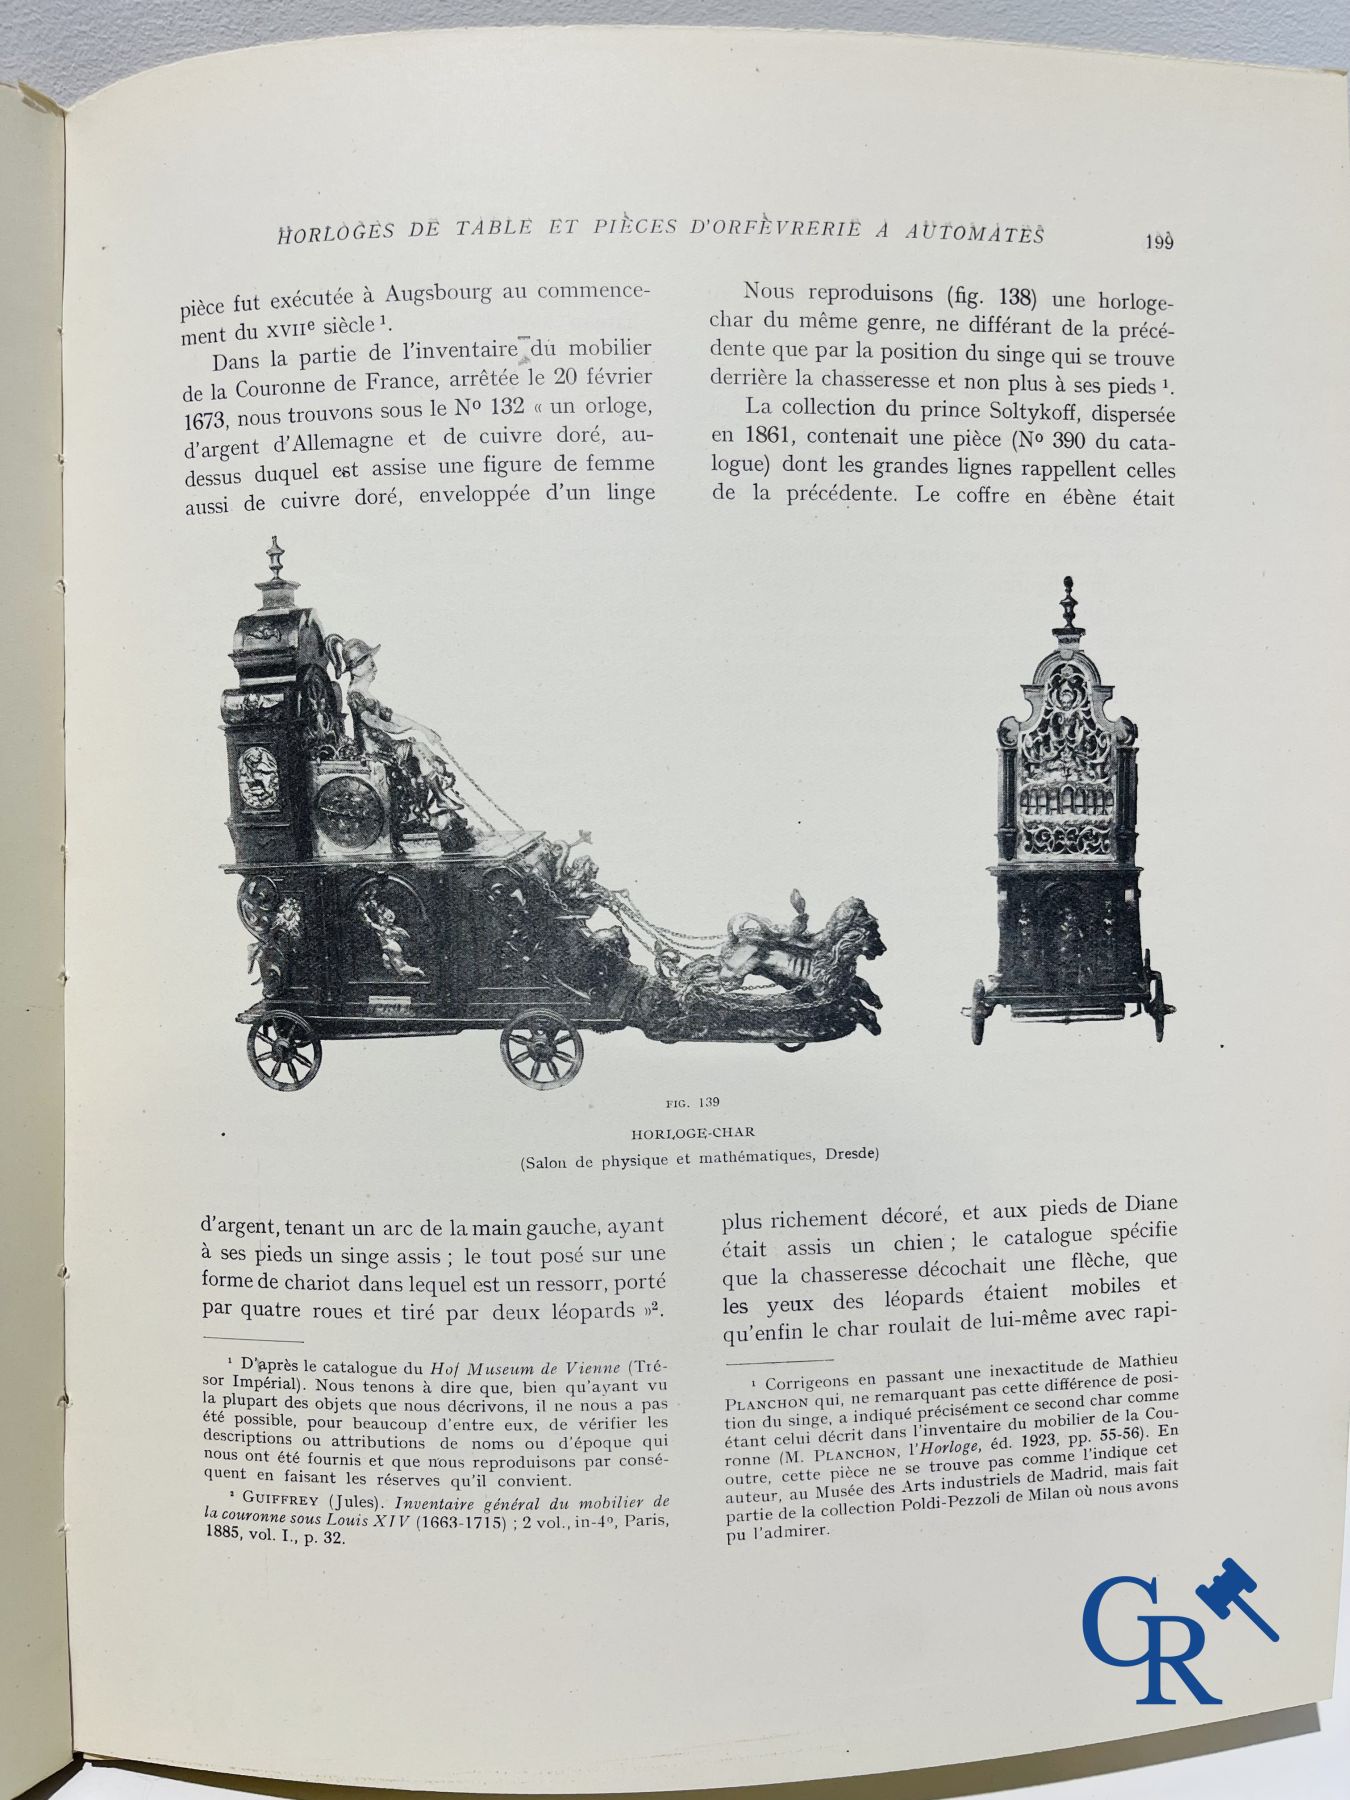 Automates. Rare edition of "Le monde des automates." Alfred Chapuis et Edouard Gélis. Paris 1928. - Image 12 of 26